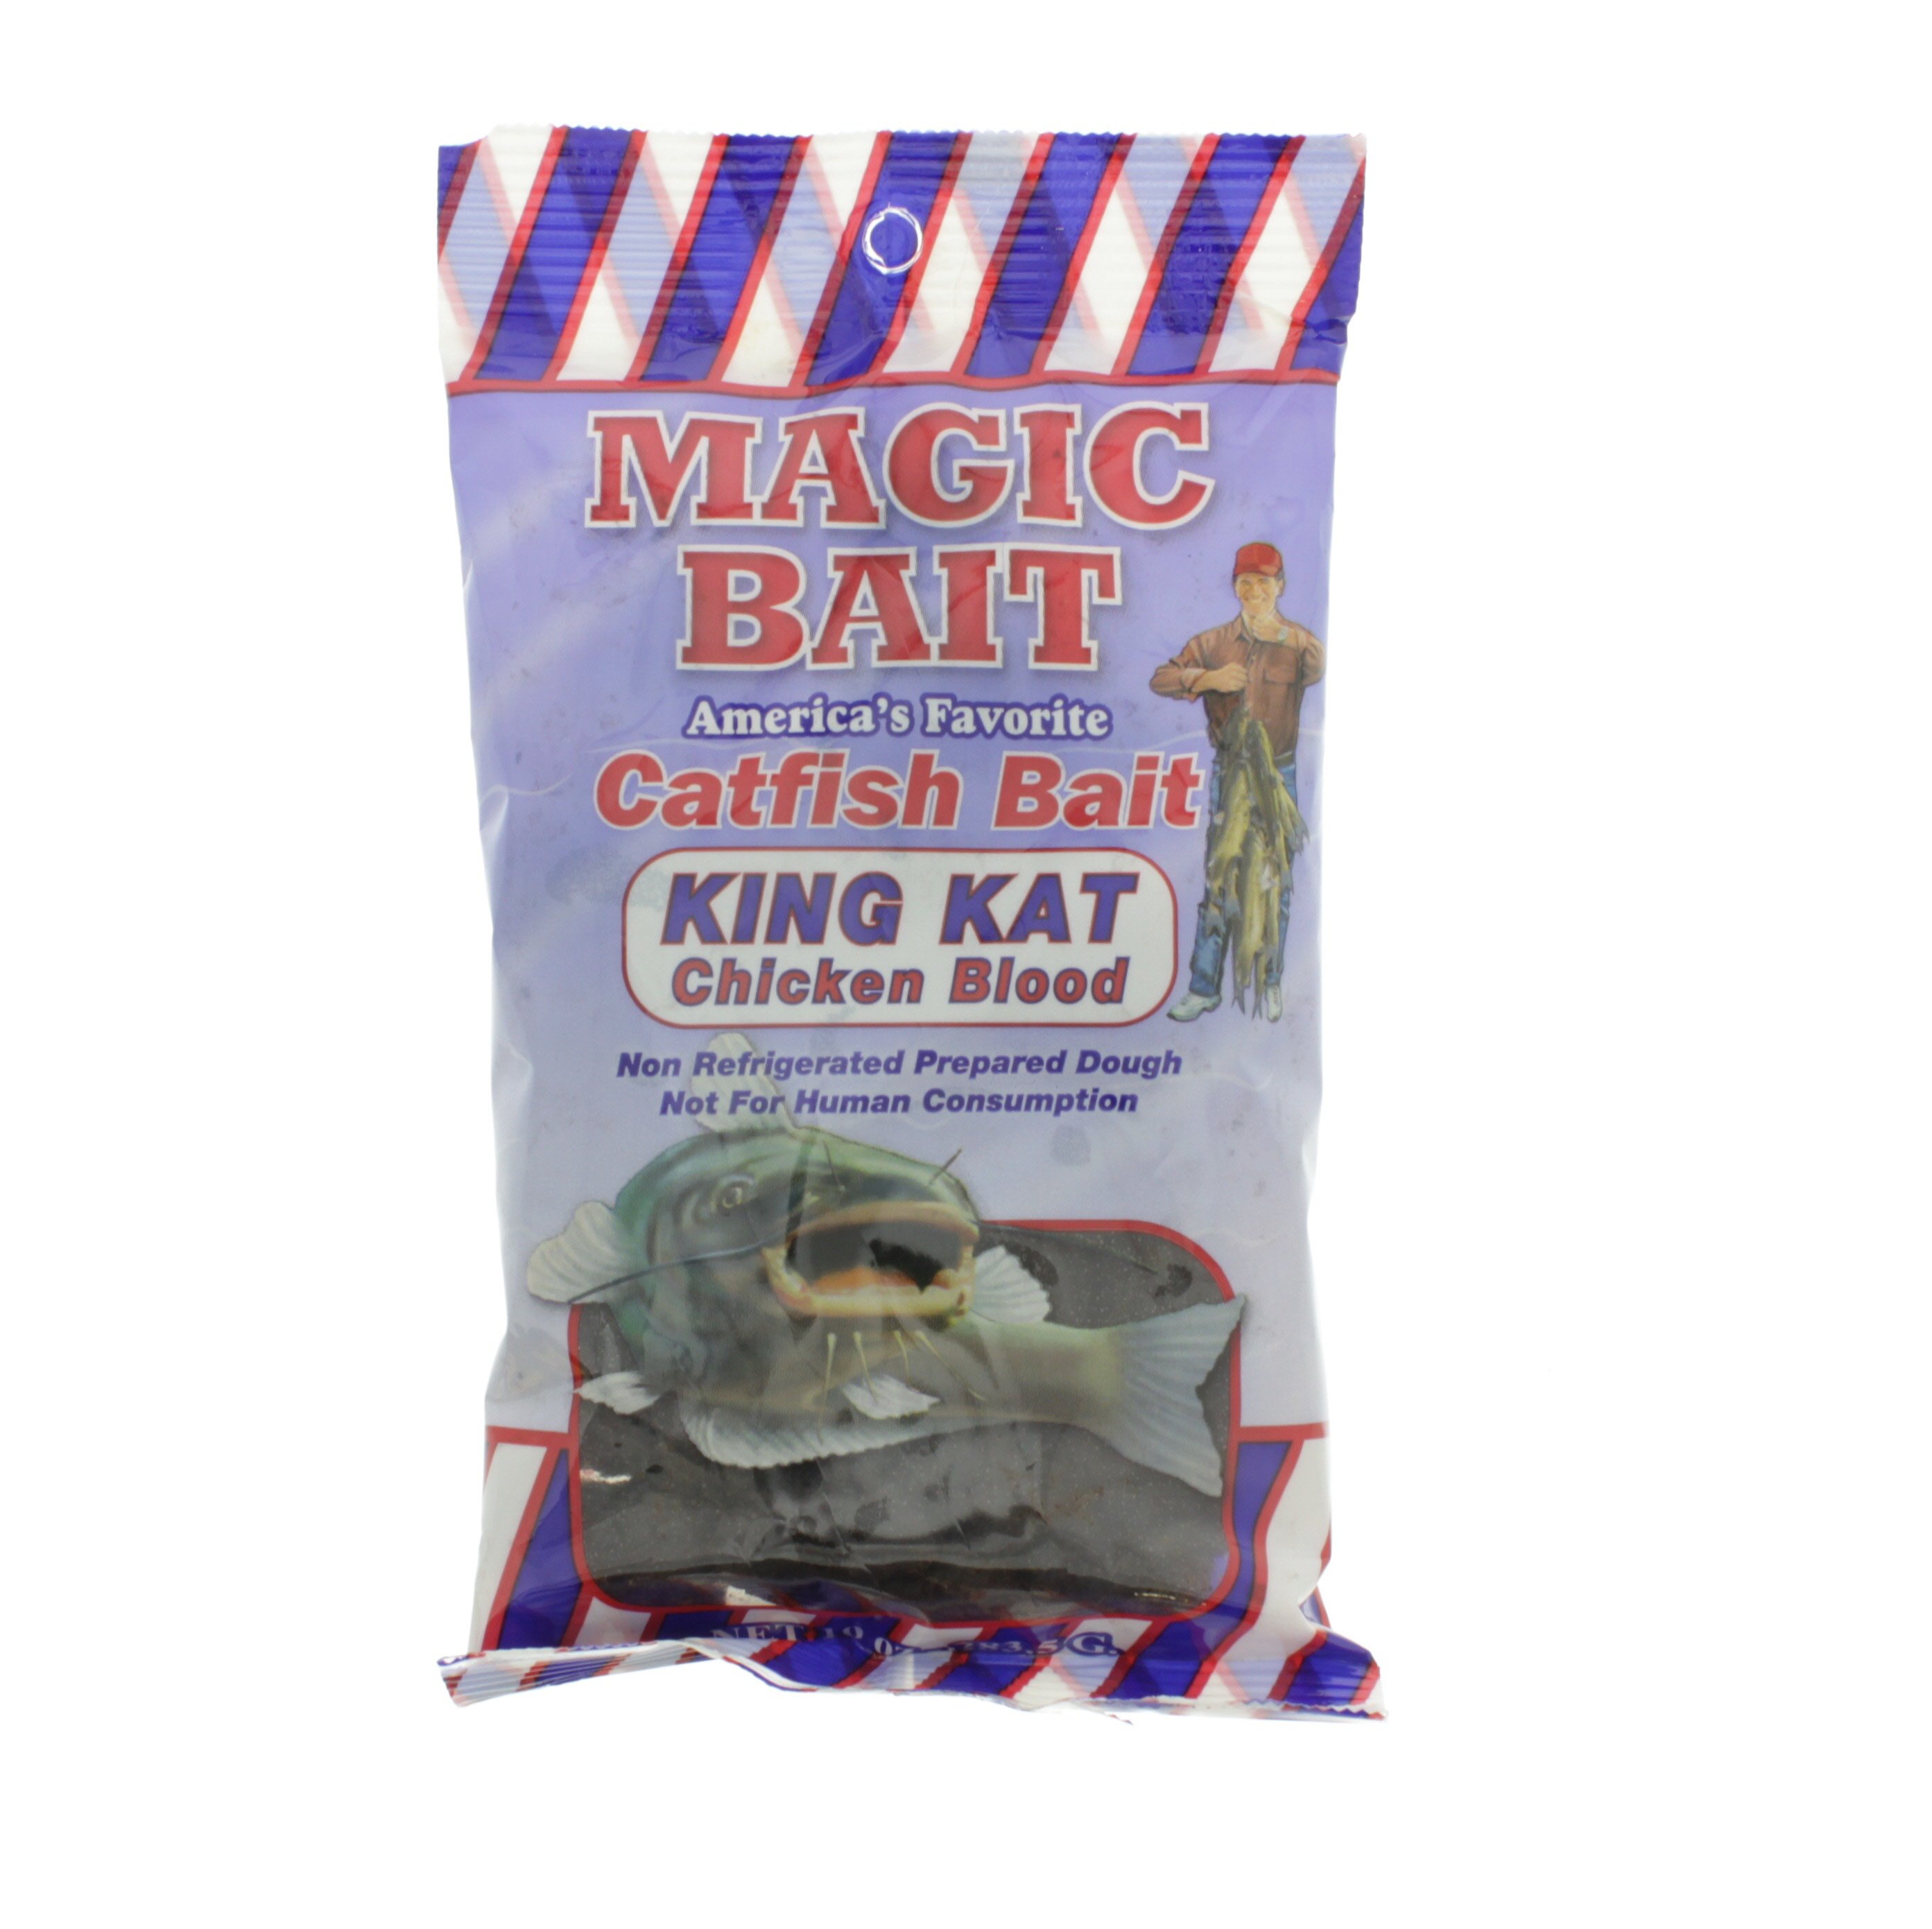 Magic Bait King Kat Chicken Blood Catfish Bait